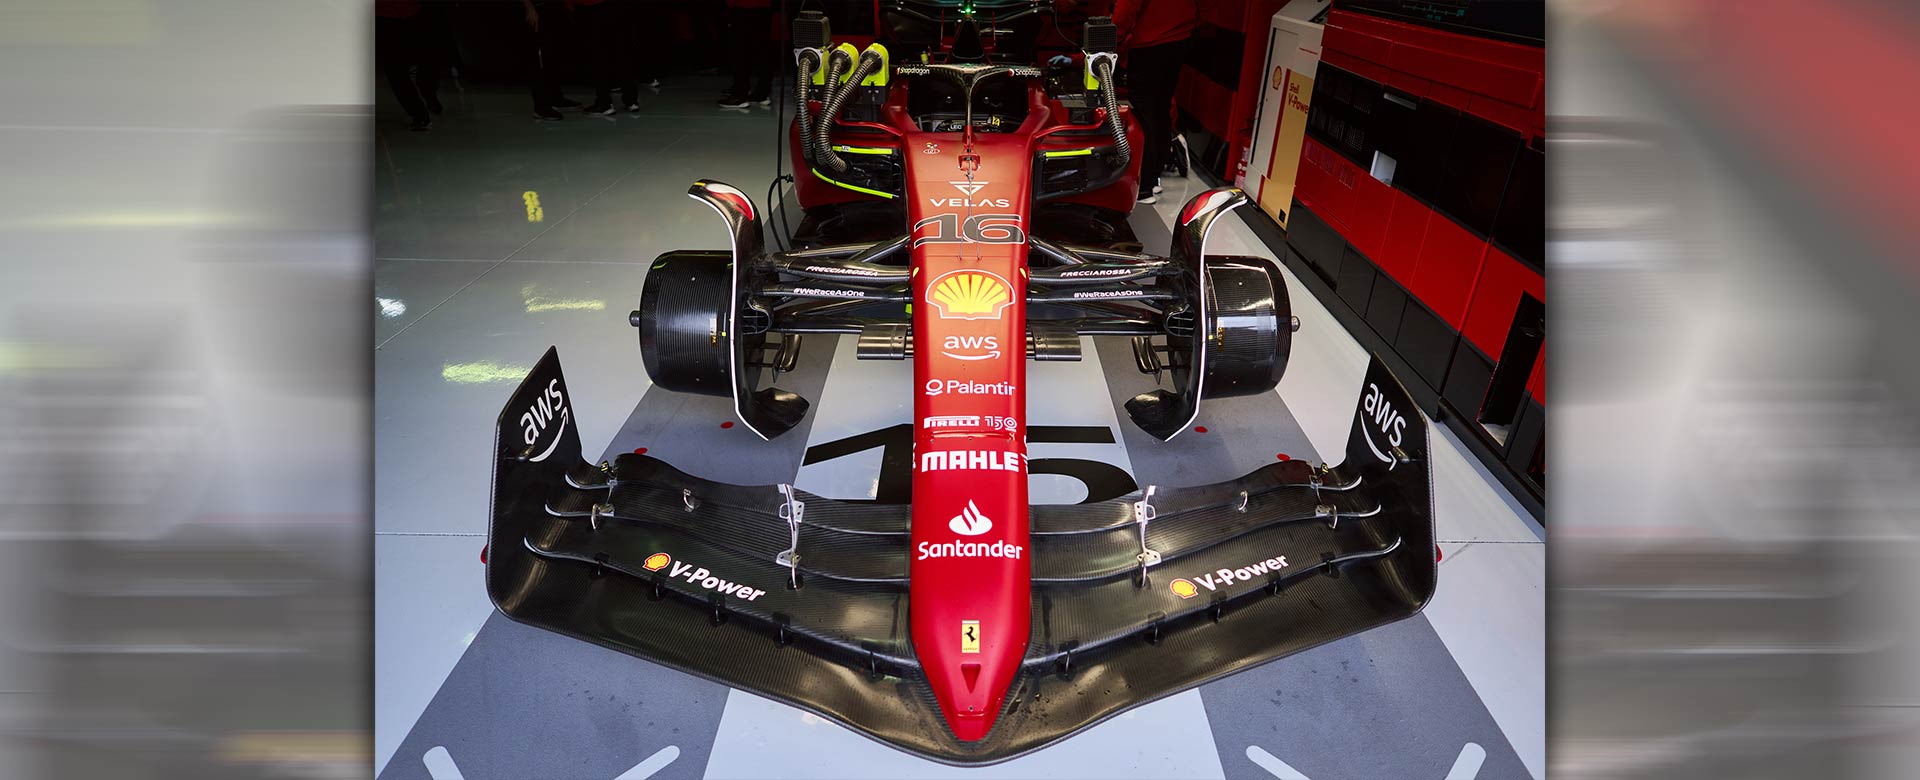 Monoposto Ferrari con sponsor